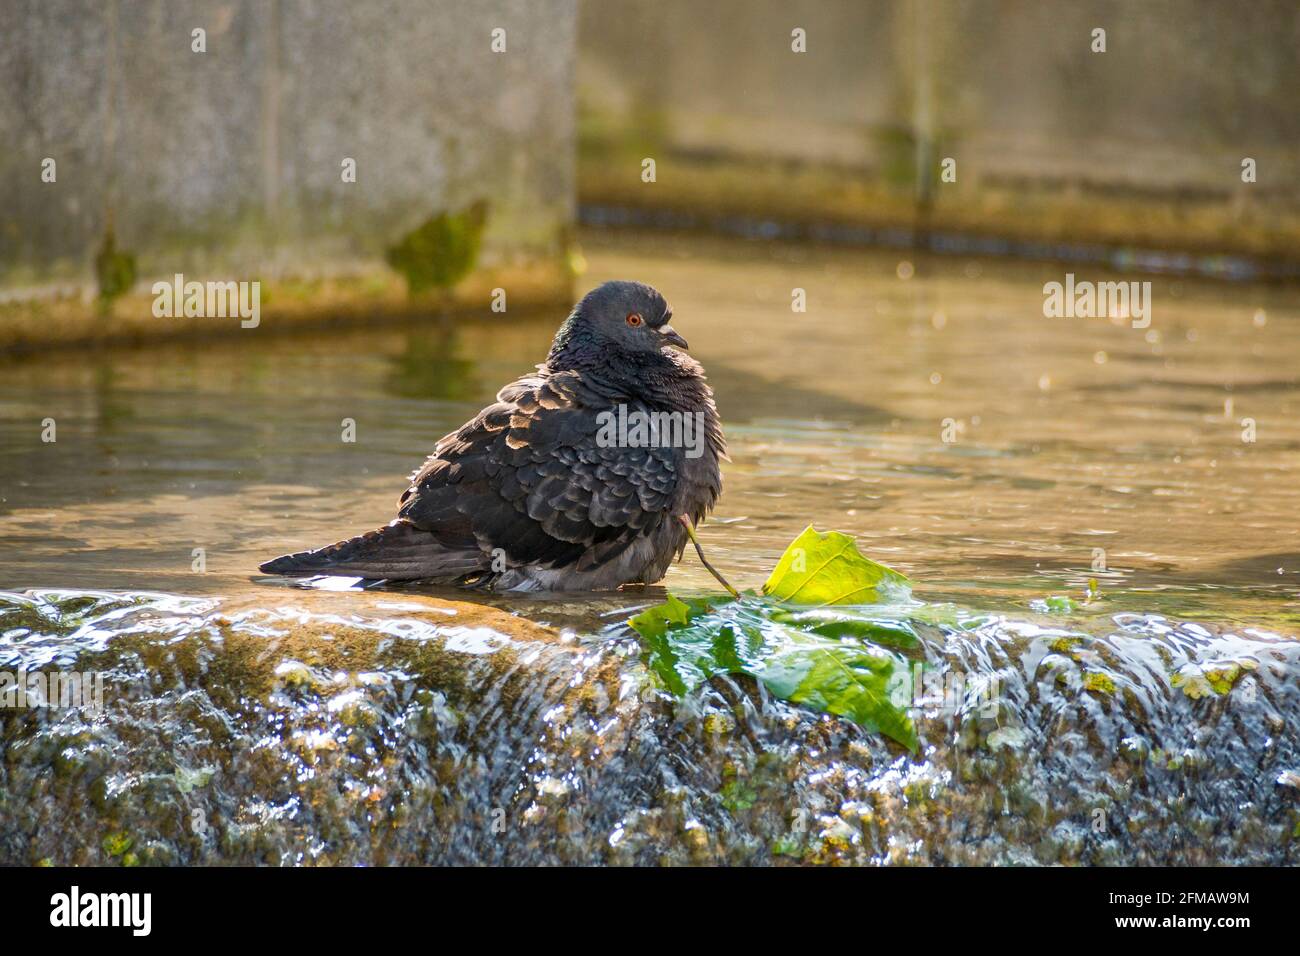 Alemania, Baden-Württemberg, paloma, baño de paloma doméstico, limpieza de plumaje en el agua de un tazón de fuente Foto de stock